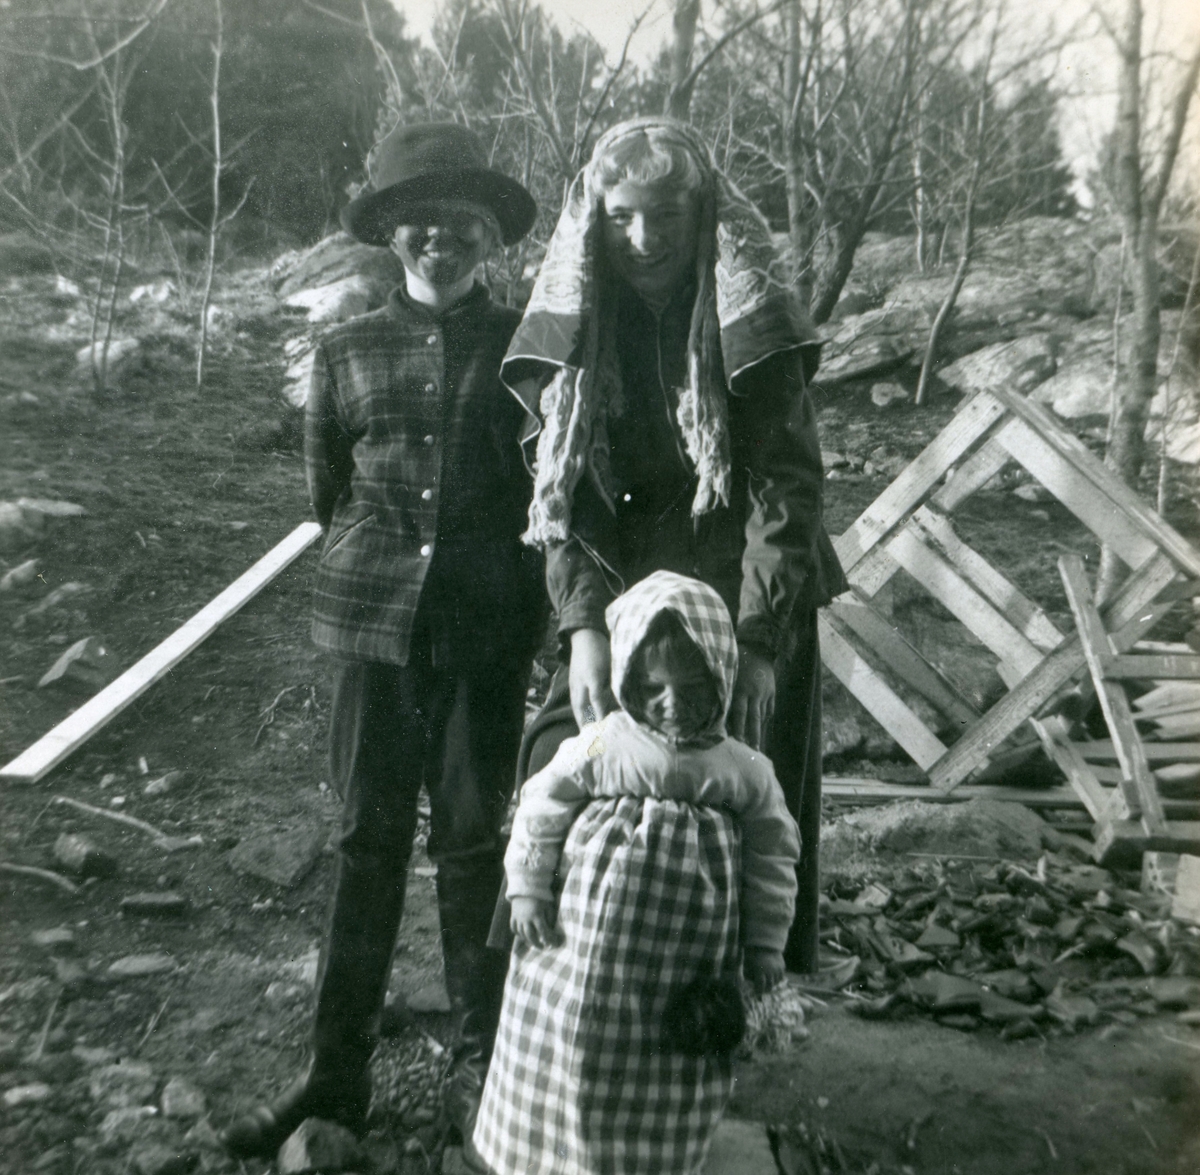 Manne Ekman (född 1955) firar påsk i Vommedal tillsammans med Margareta "Maggan" Skansing (född 1946) och Britt "Bittan" Svensson. Okänt årtal. Barnen står utomhus med träd i bakgrunden.